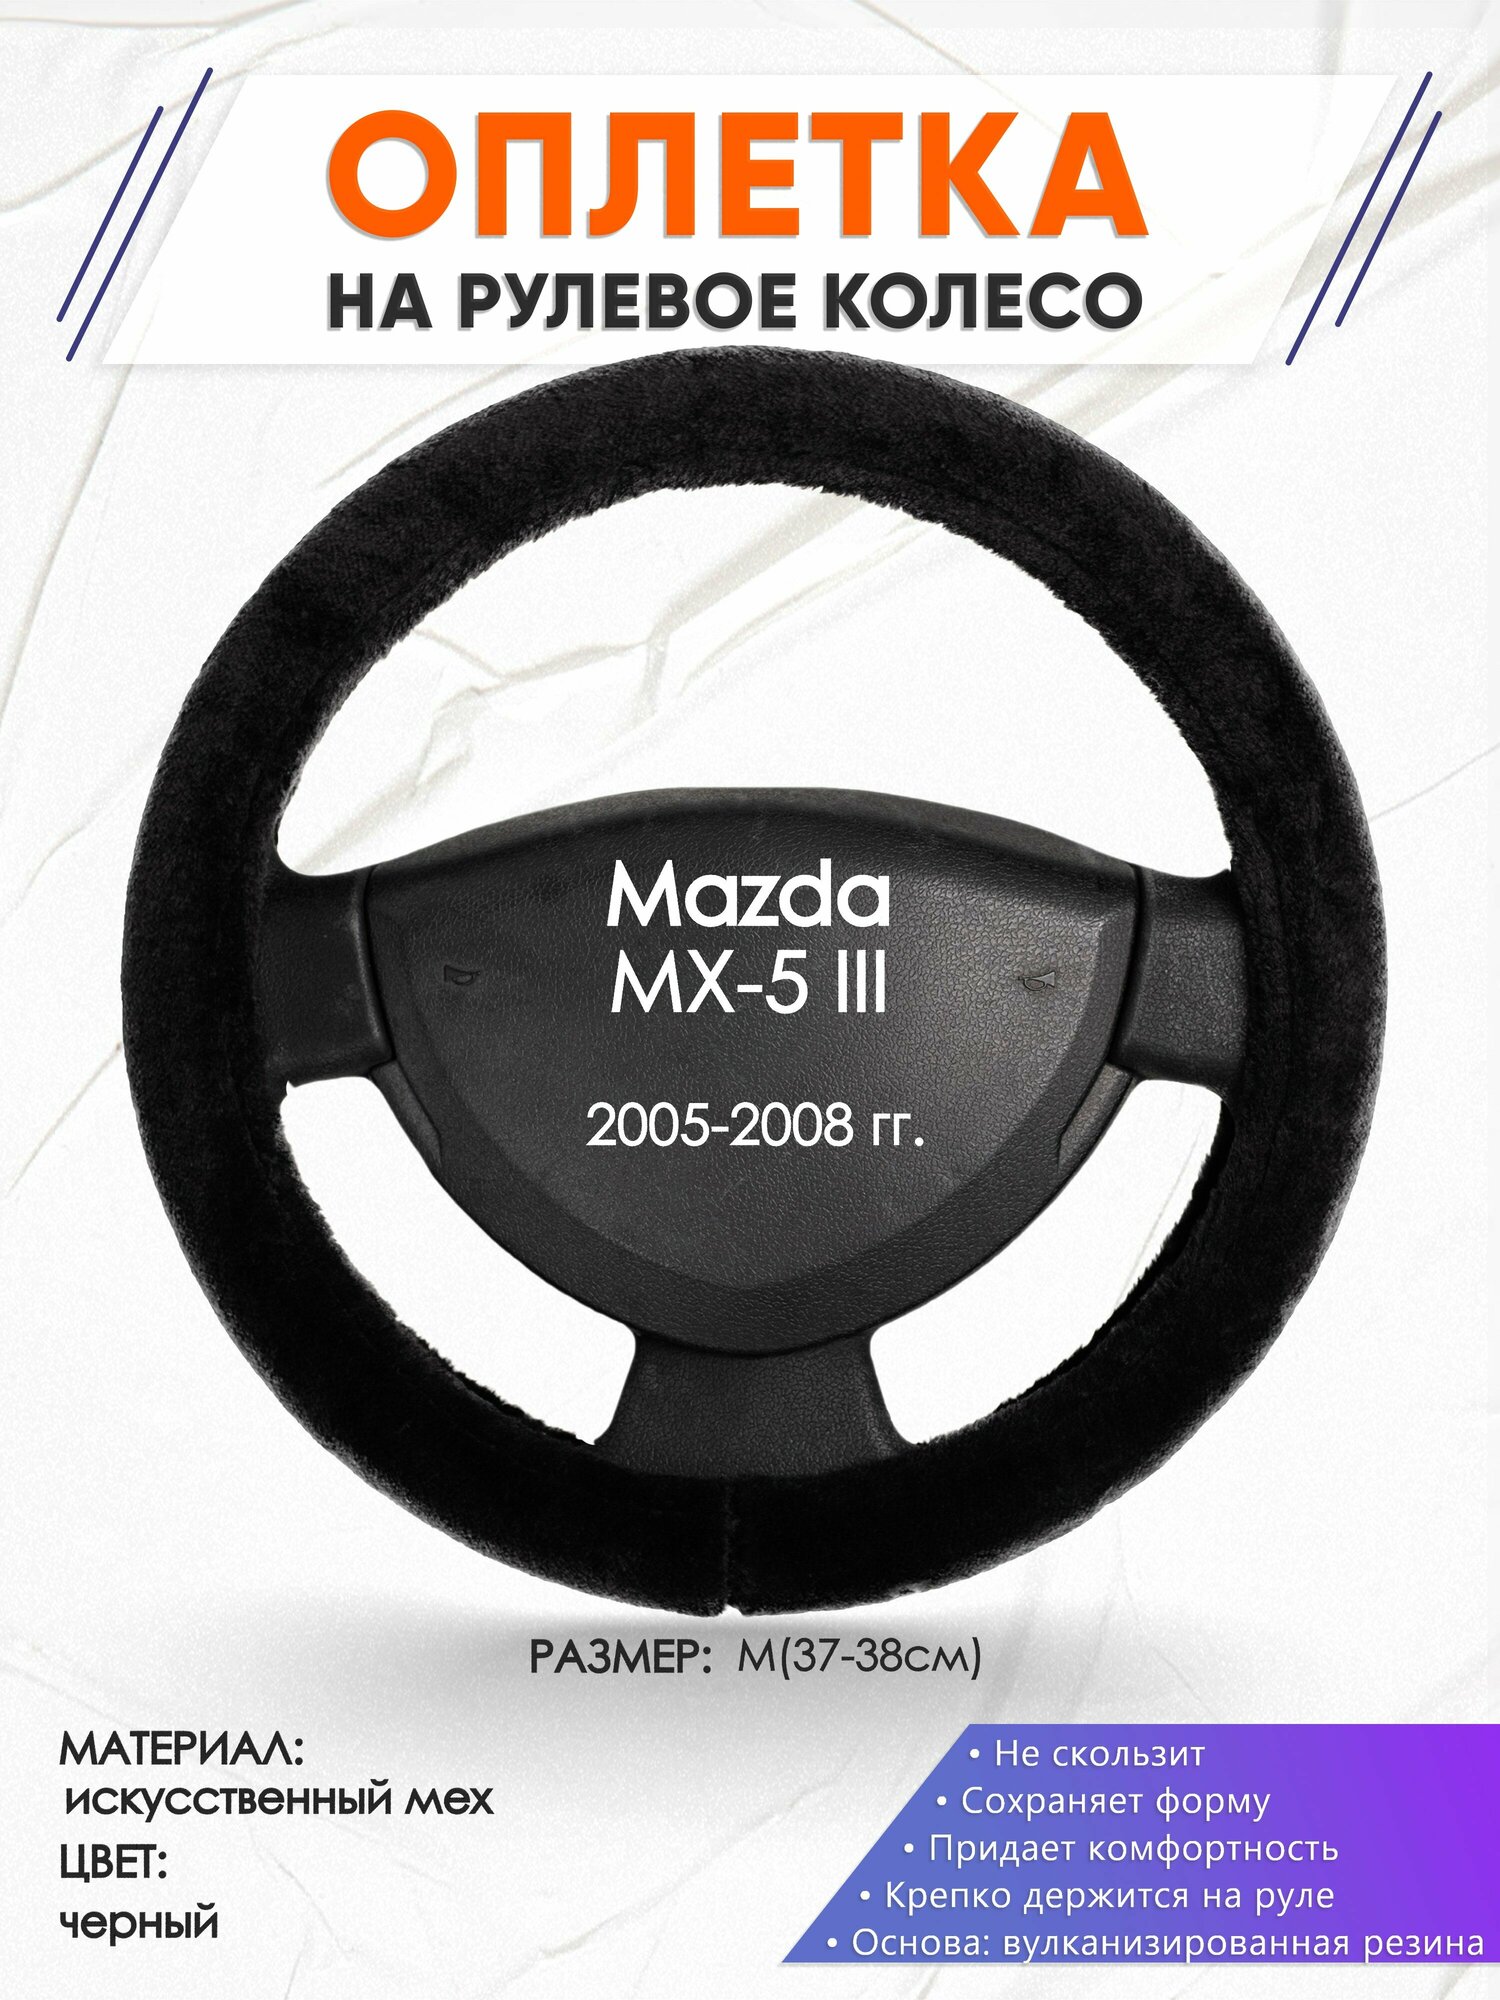 Оплетка наруль для Mazda MX-5 III(Мазда МХ 5) 2005-2008 годов выпуска, размер M(37-38см), Искусственный мех 45